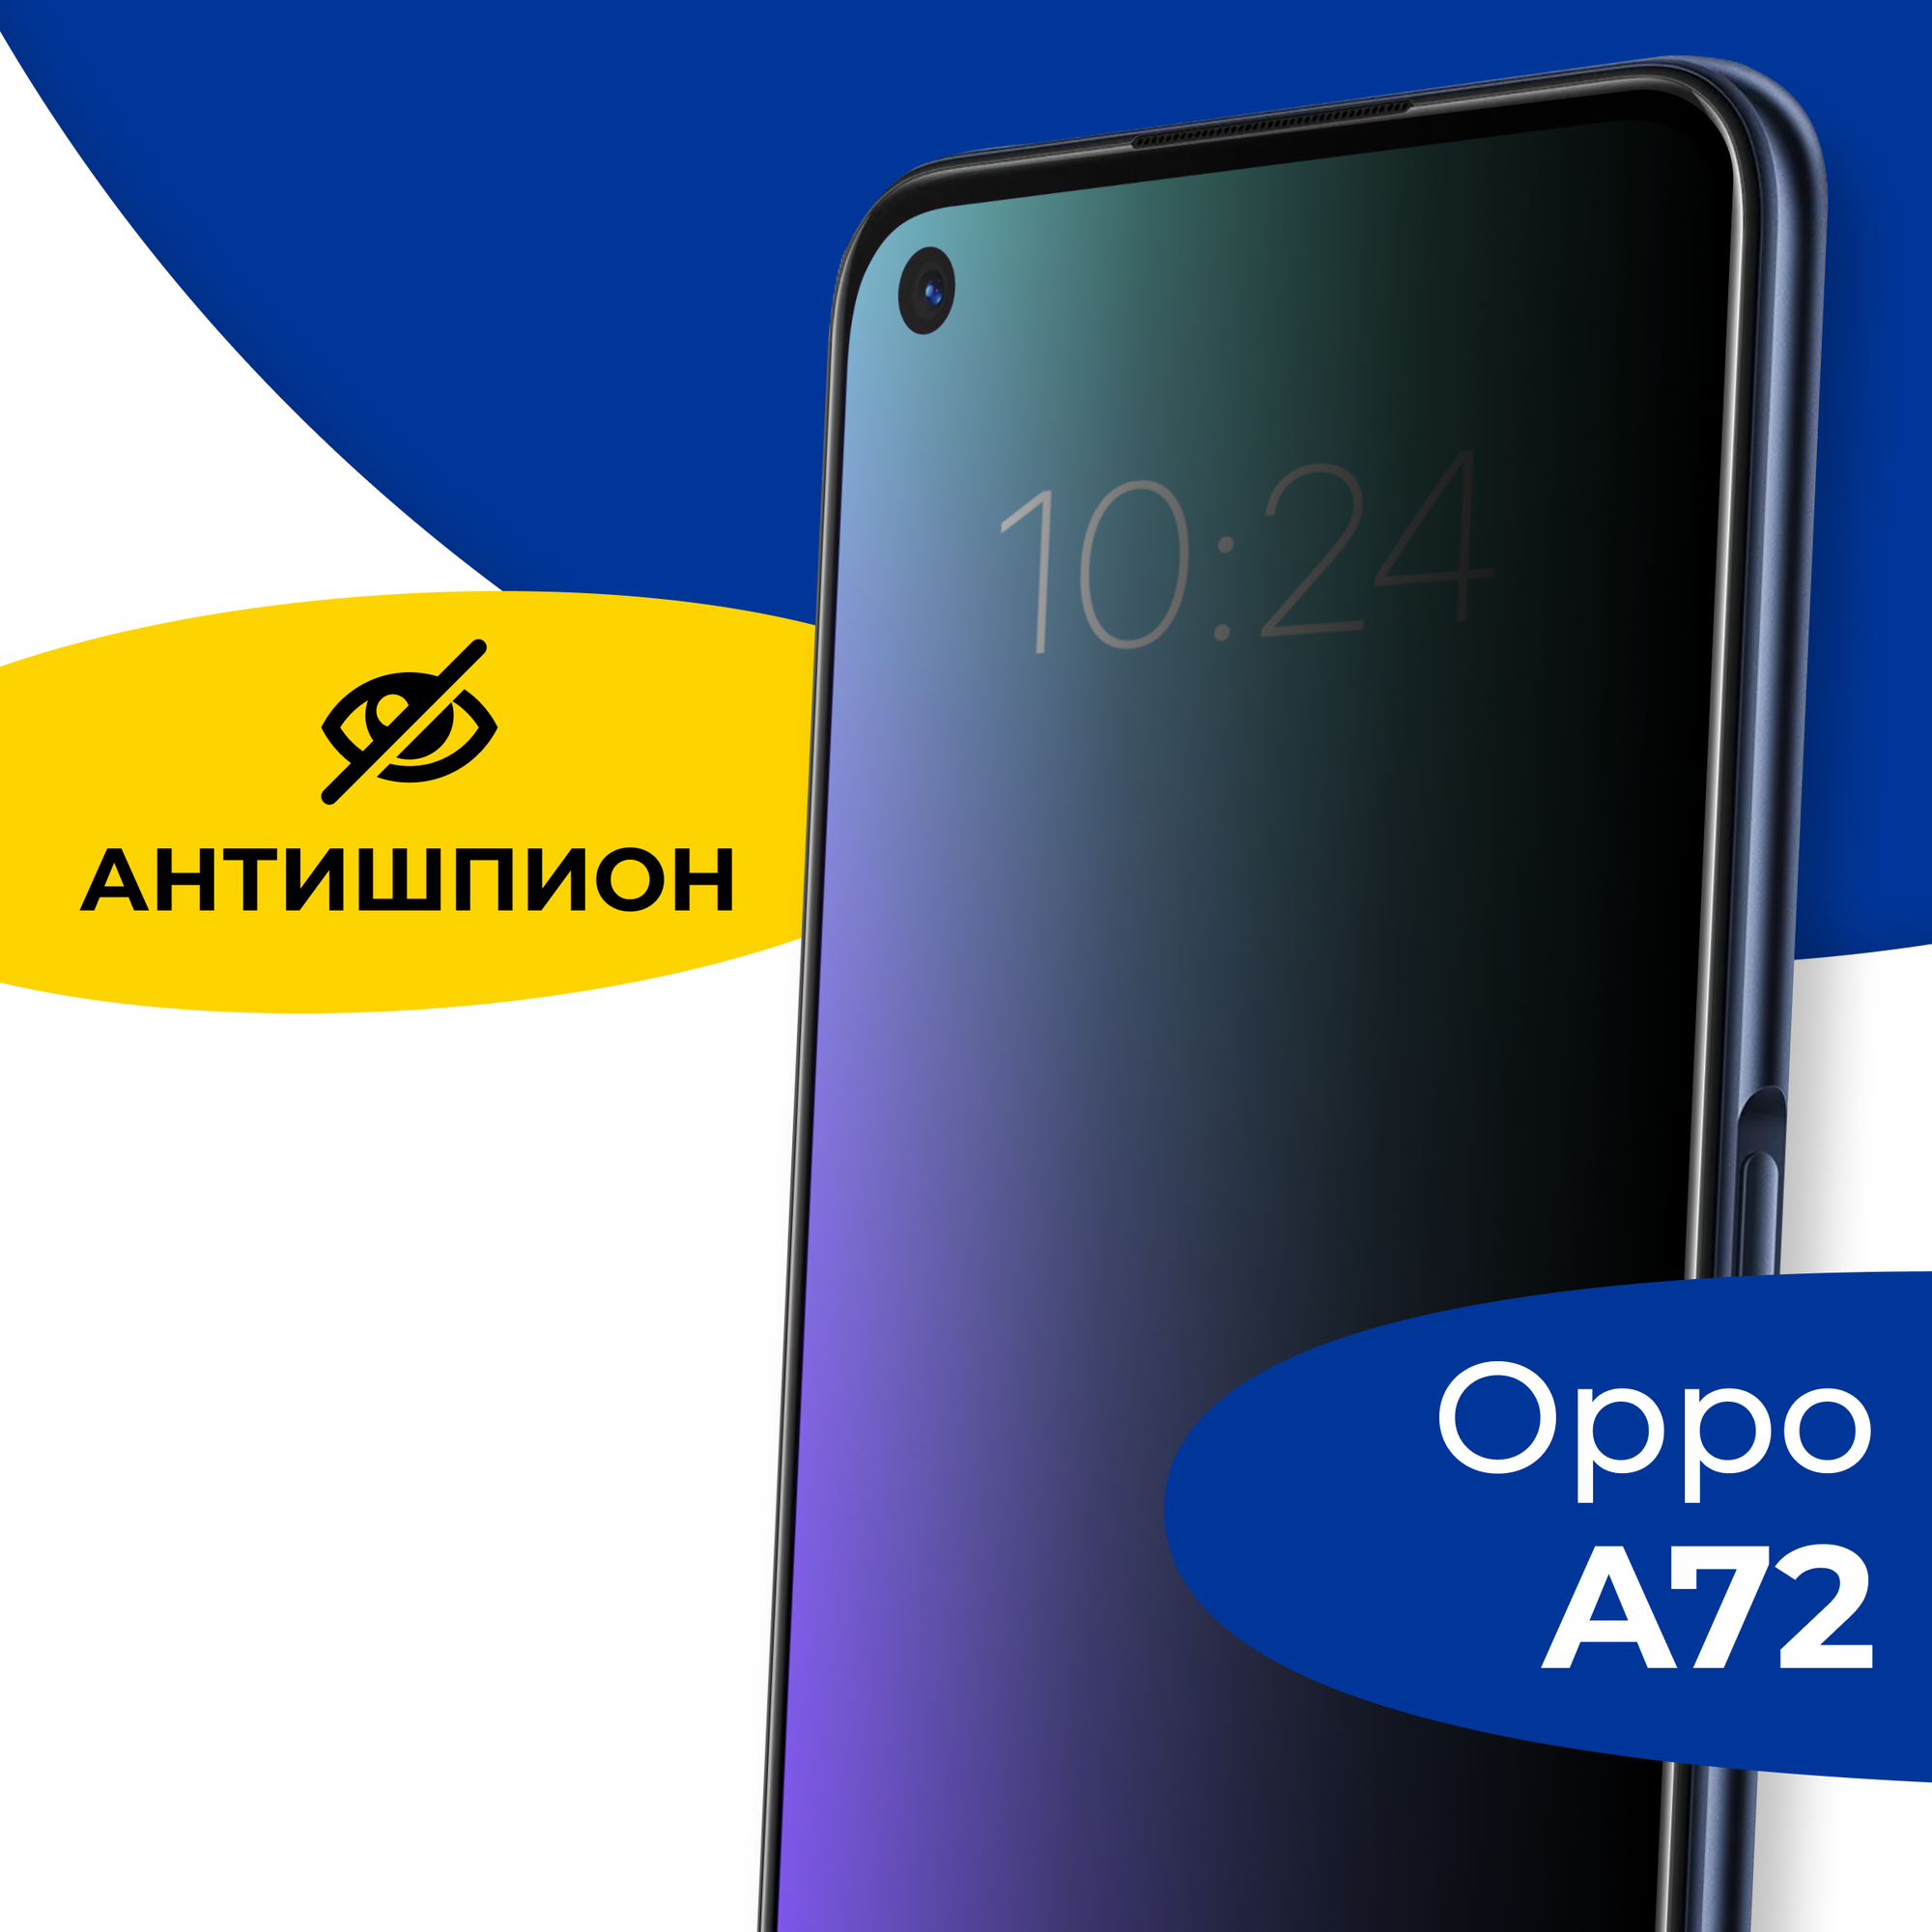 Защитное полноэкранное стекло Антишпион на телефон Oppo A72 / Противоударное стекло 5D для смартфона Оппо А72 с олеофобным покрытием